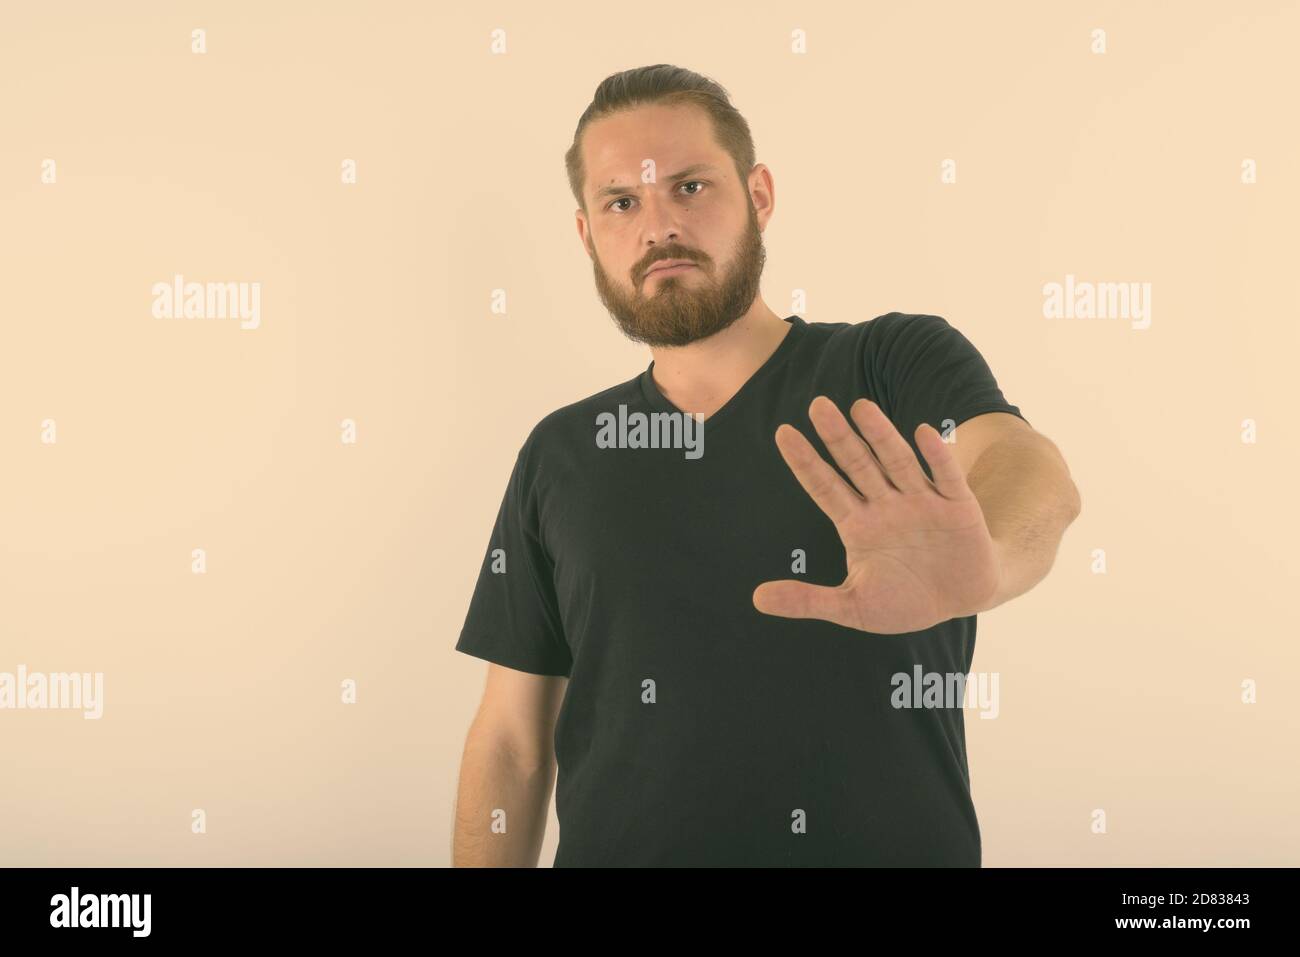 Portrait de jeune homme barbu montrant arrêter hand gesture against white background Banque D'Images